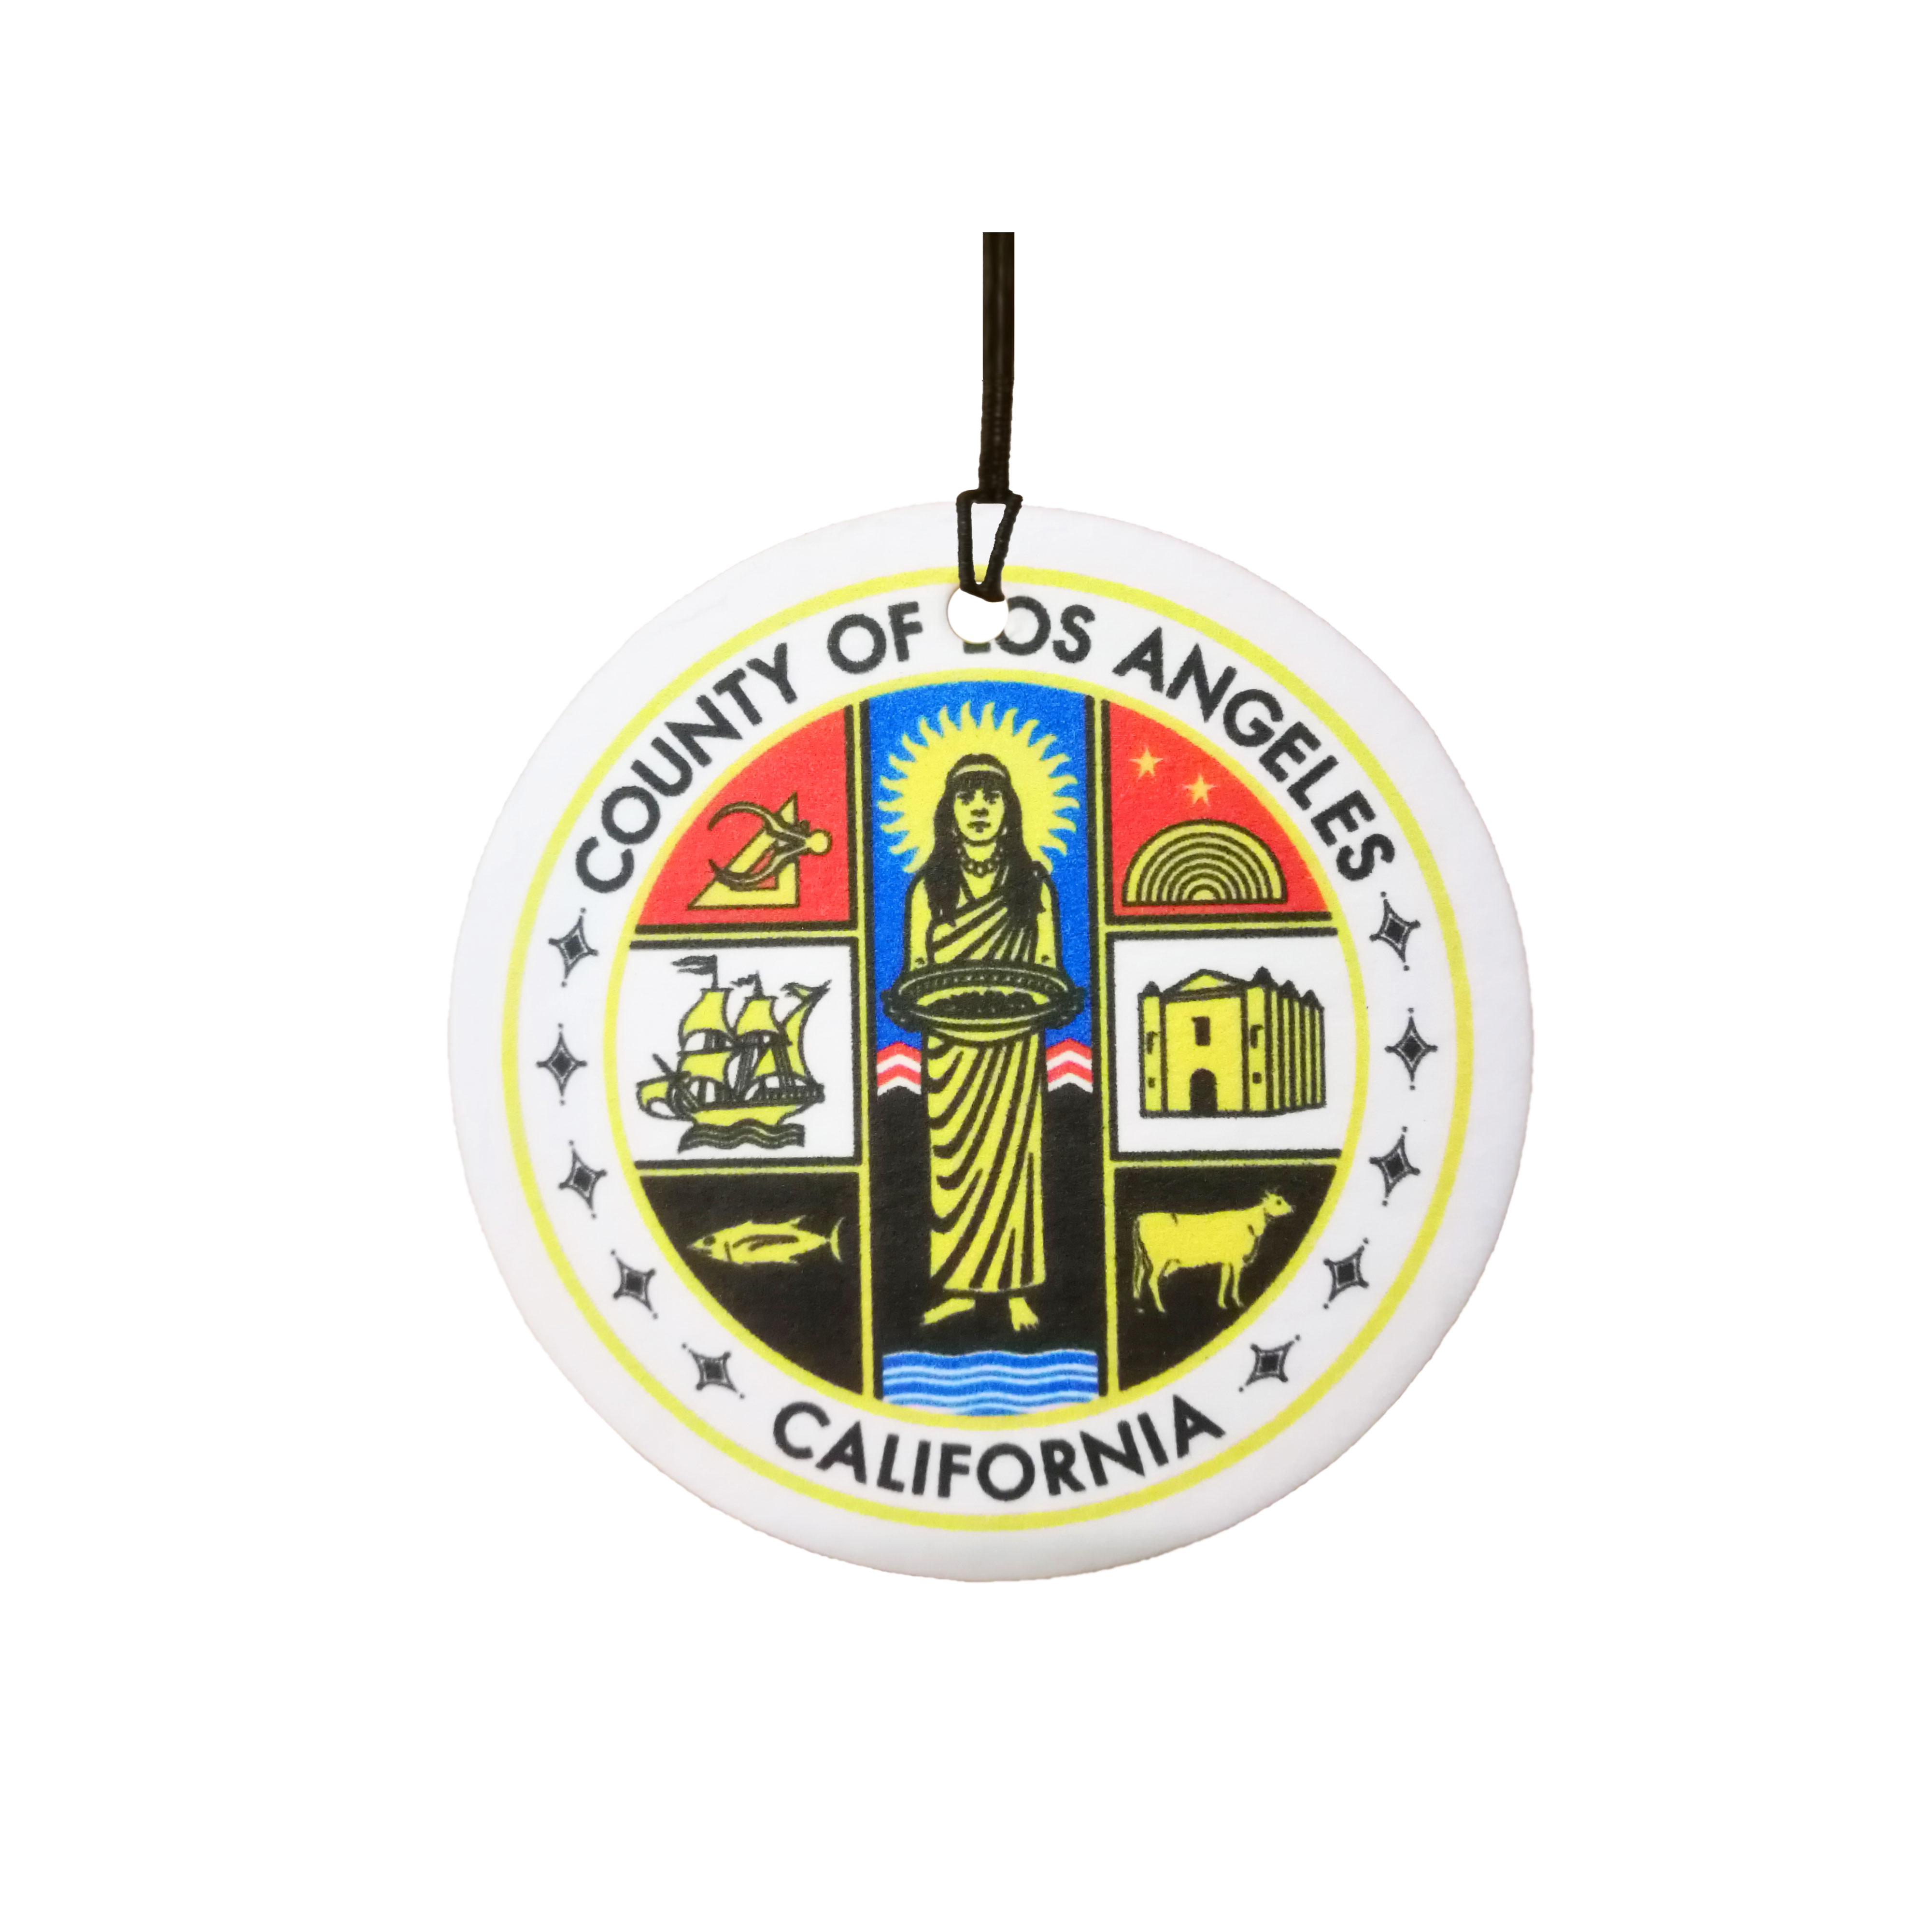 California LA Los Angeles County Seal